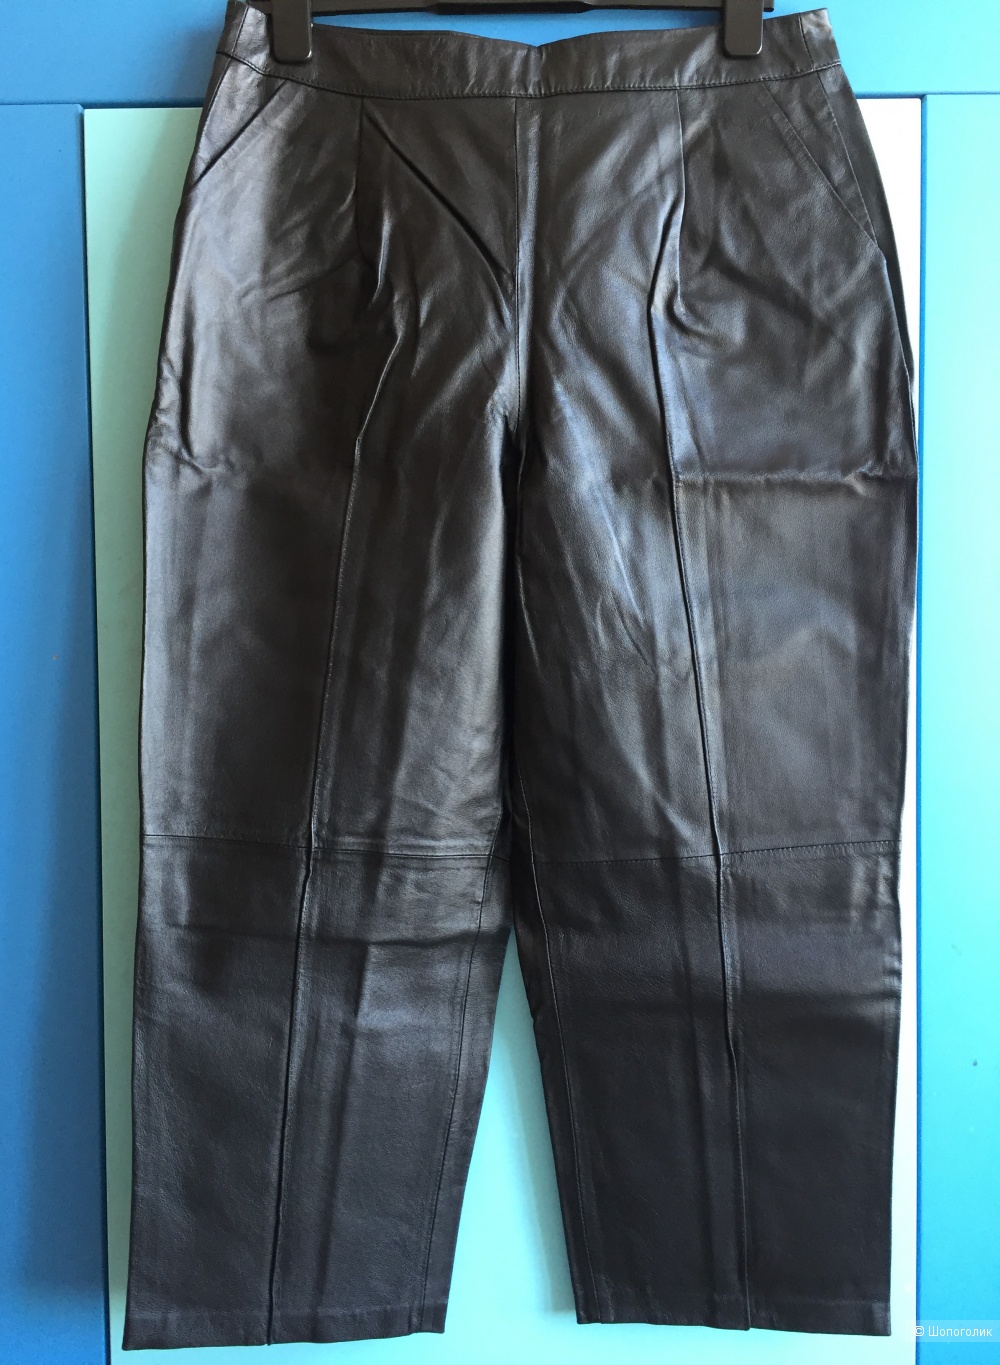 Кожаные брюки ASOS UK 14, EU 42, US 10, RU 48-50-52